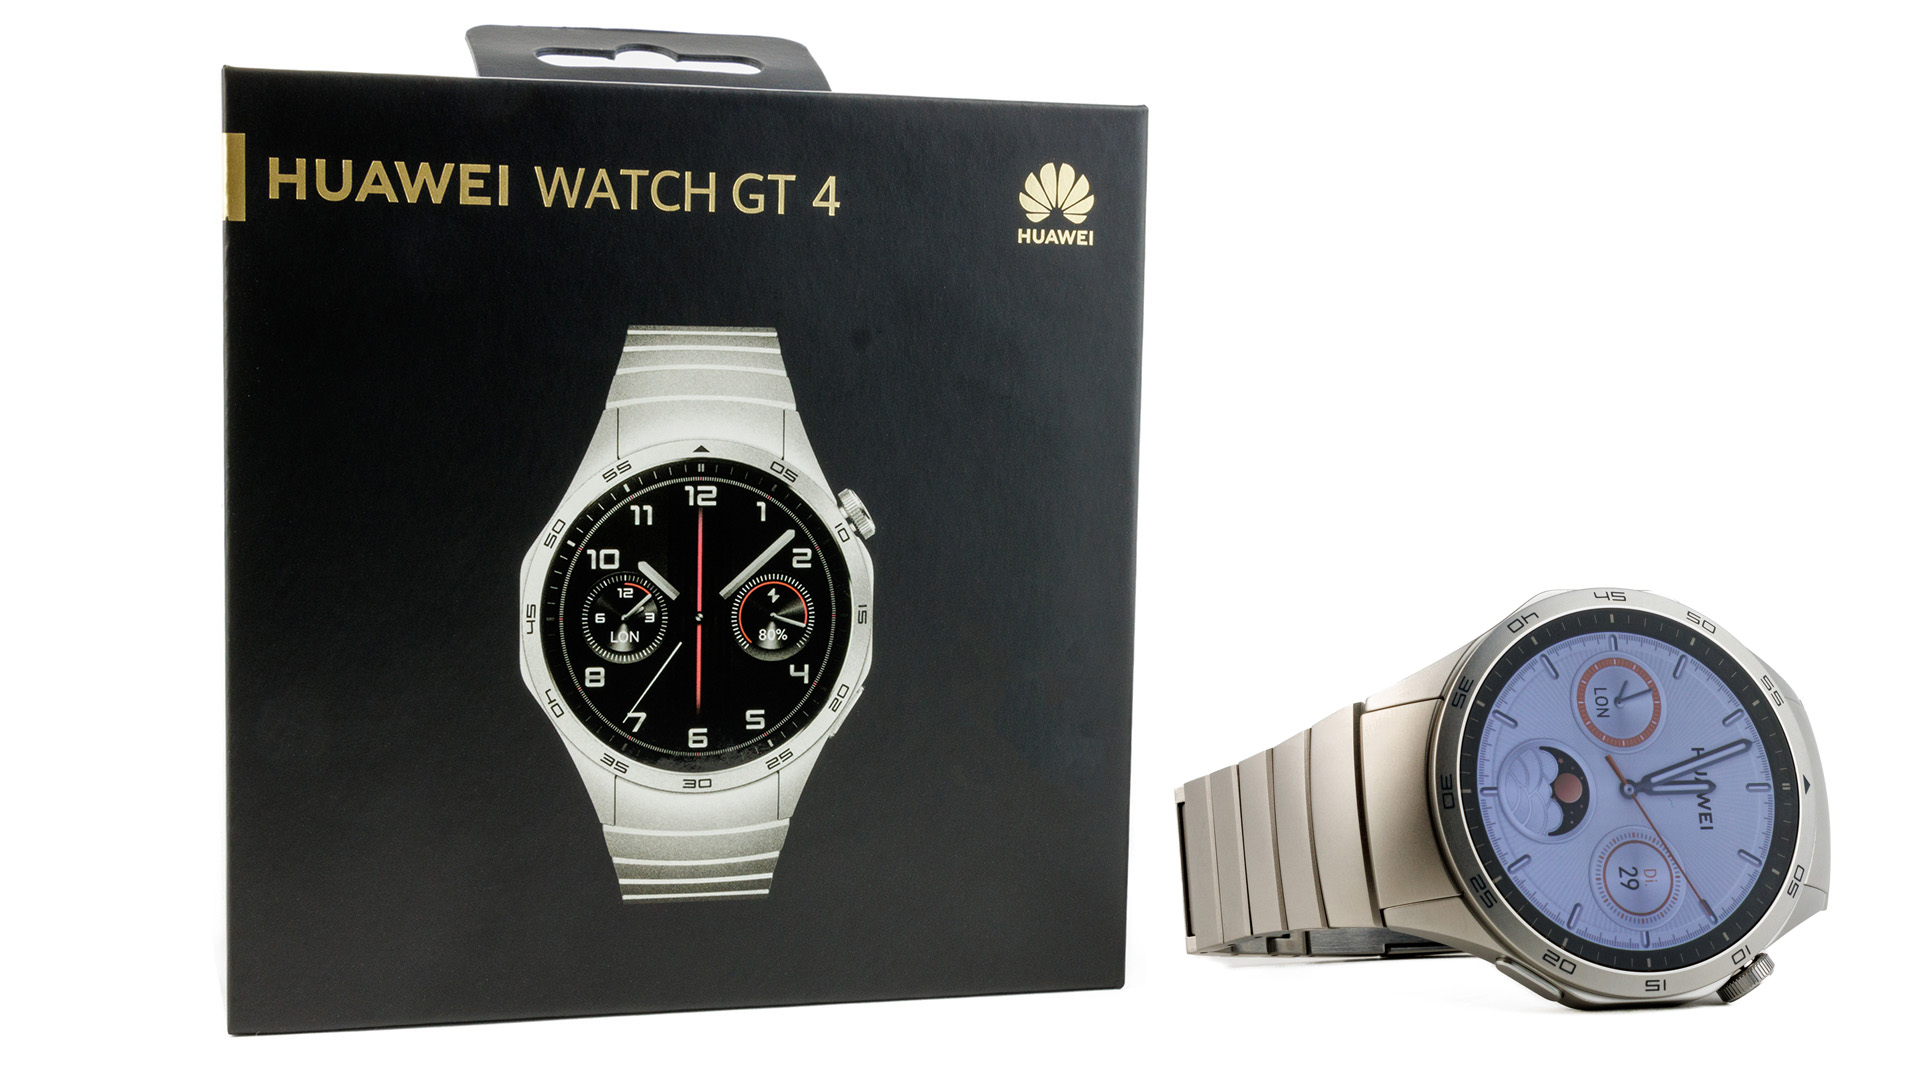 Huawei Watch GT 4 smartwatch FASHION TIME!!! 